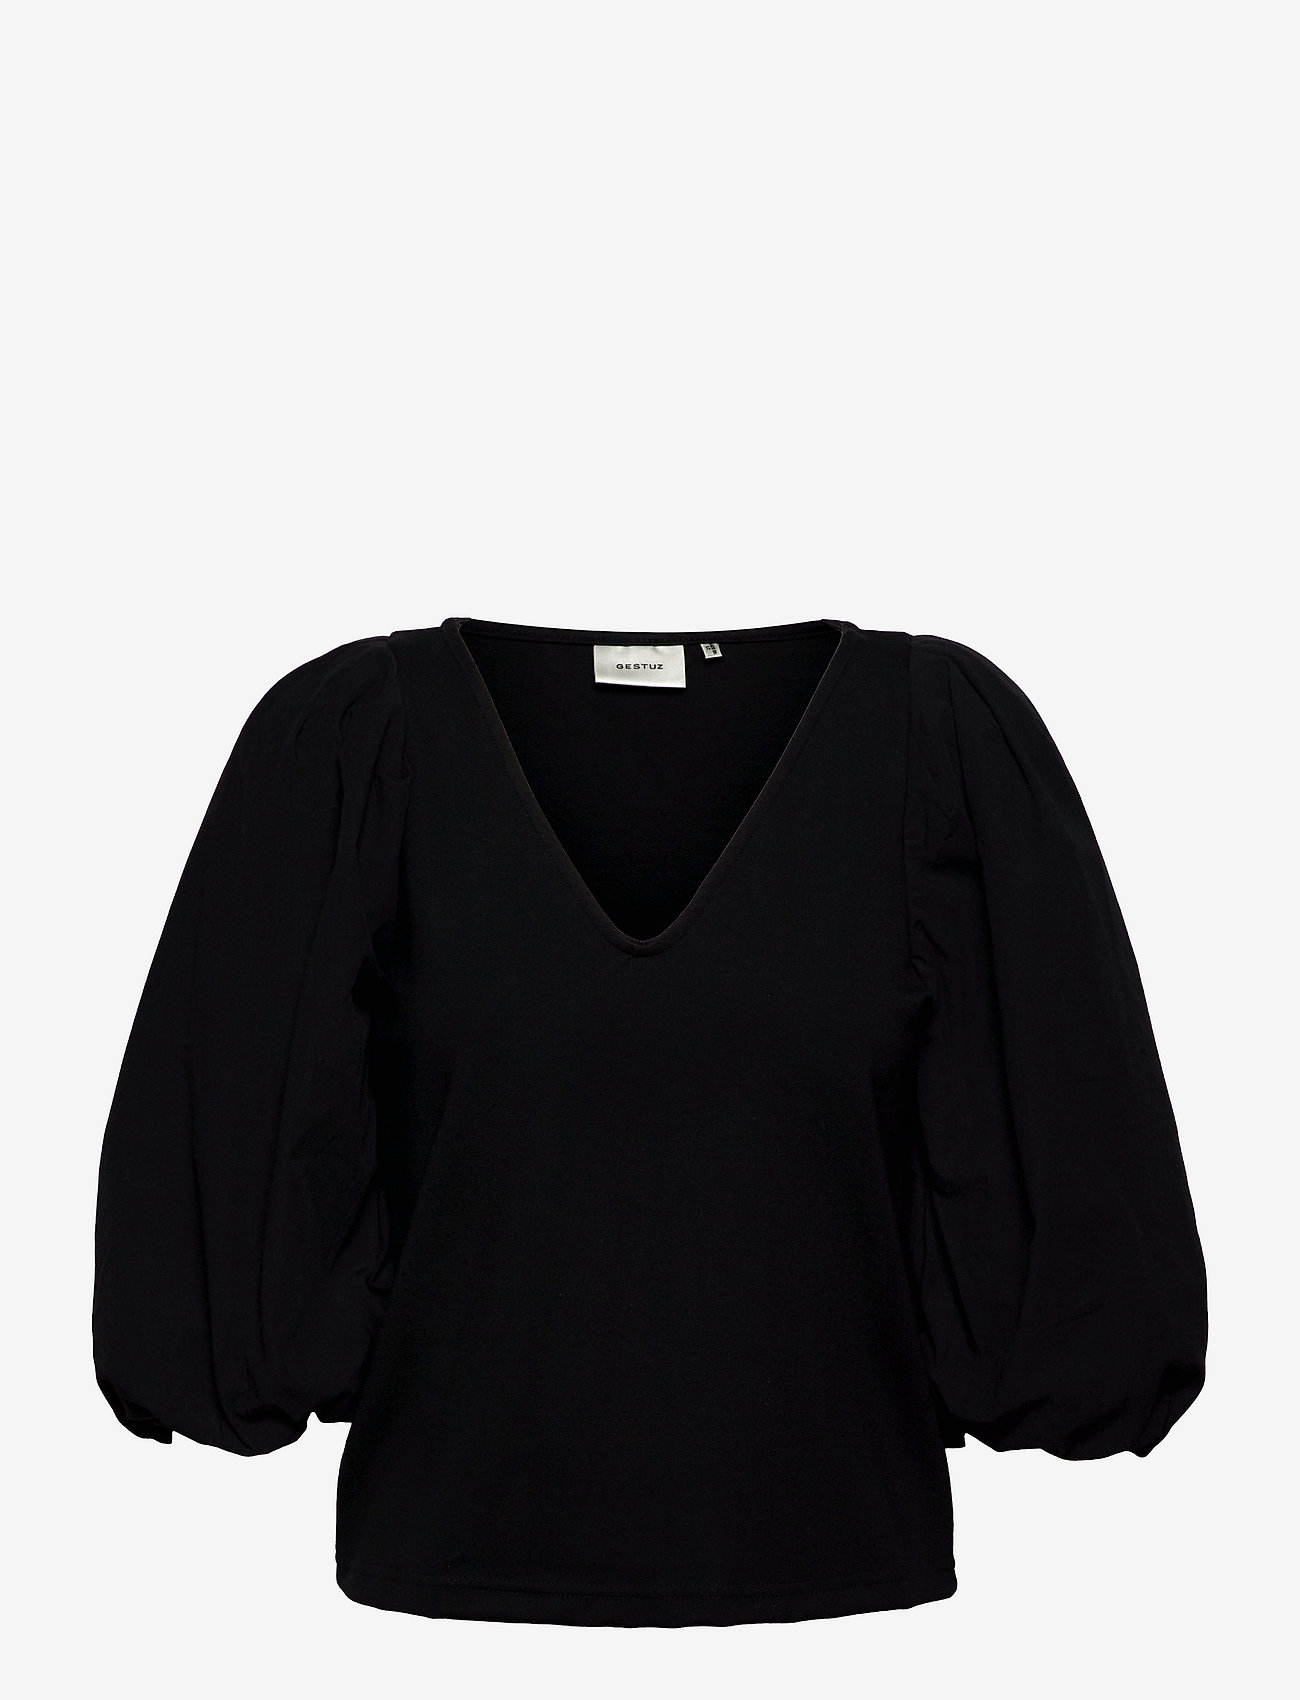 Gestuz - NemaGZ blouse - palaidinės ilgomis rankovėmis - black - 0